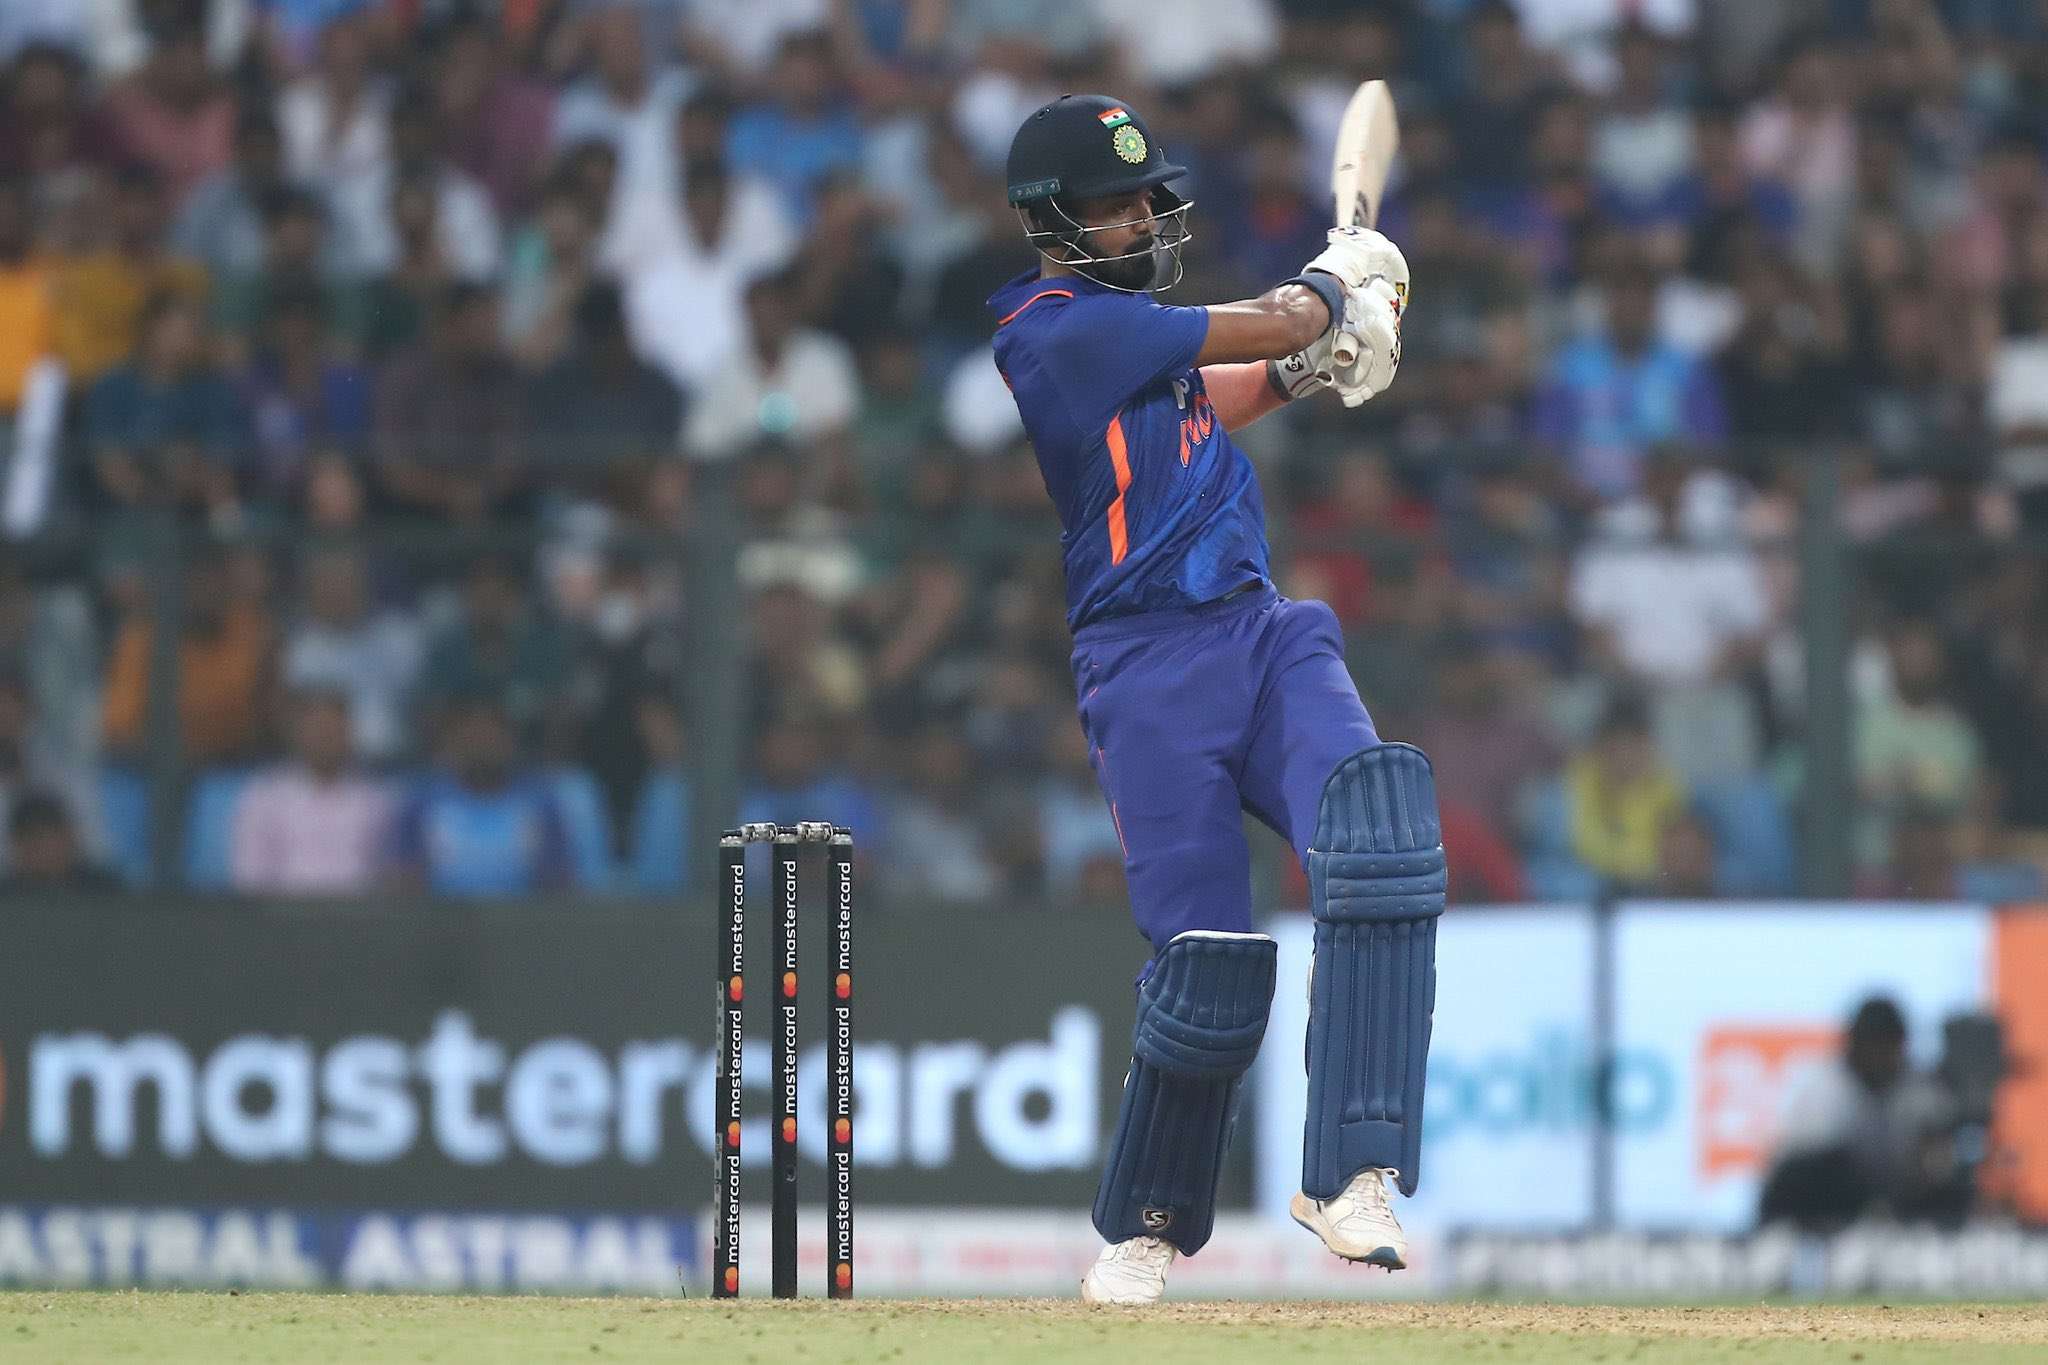 IND vs AUS 1st ODI: KL Rahul की बेहतरीन पारी, ऑस्ट्रेलिया के खिलाफ जड़ा वनडे करियर का 13वां अर्धशतक-Watch Video